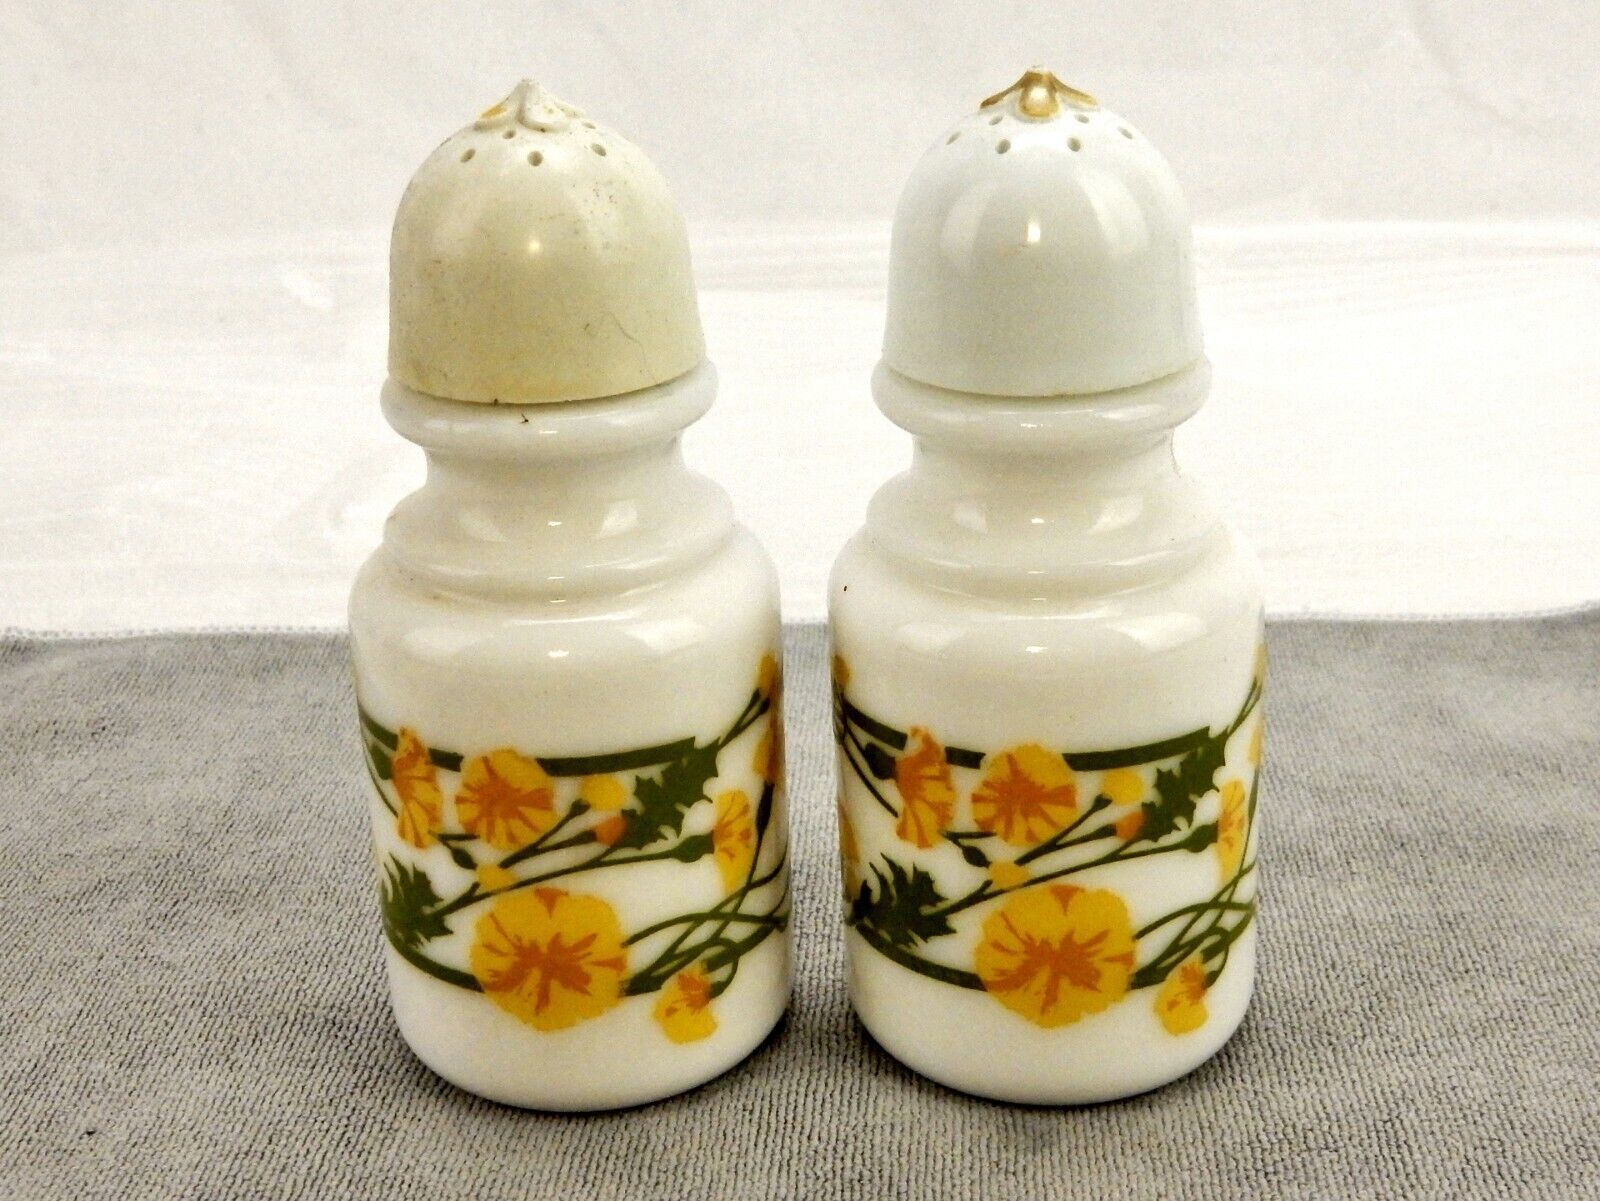 Milk Glass Salt & Pepper Shakers, Yellow Flowers, Vintage Avon Bath Oil Bottles - $14.65